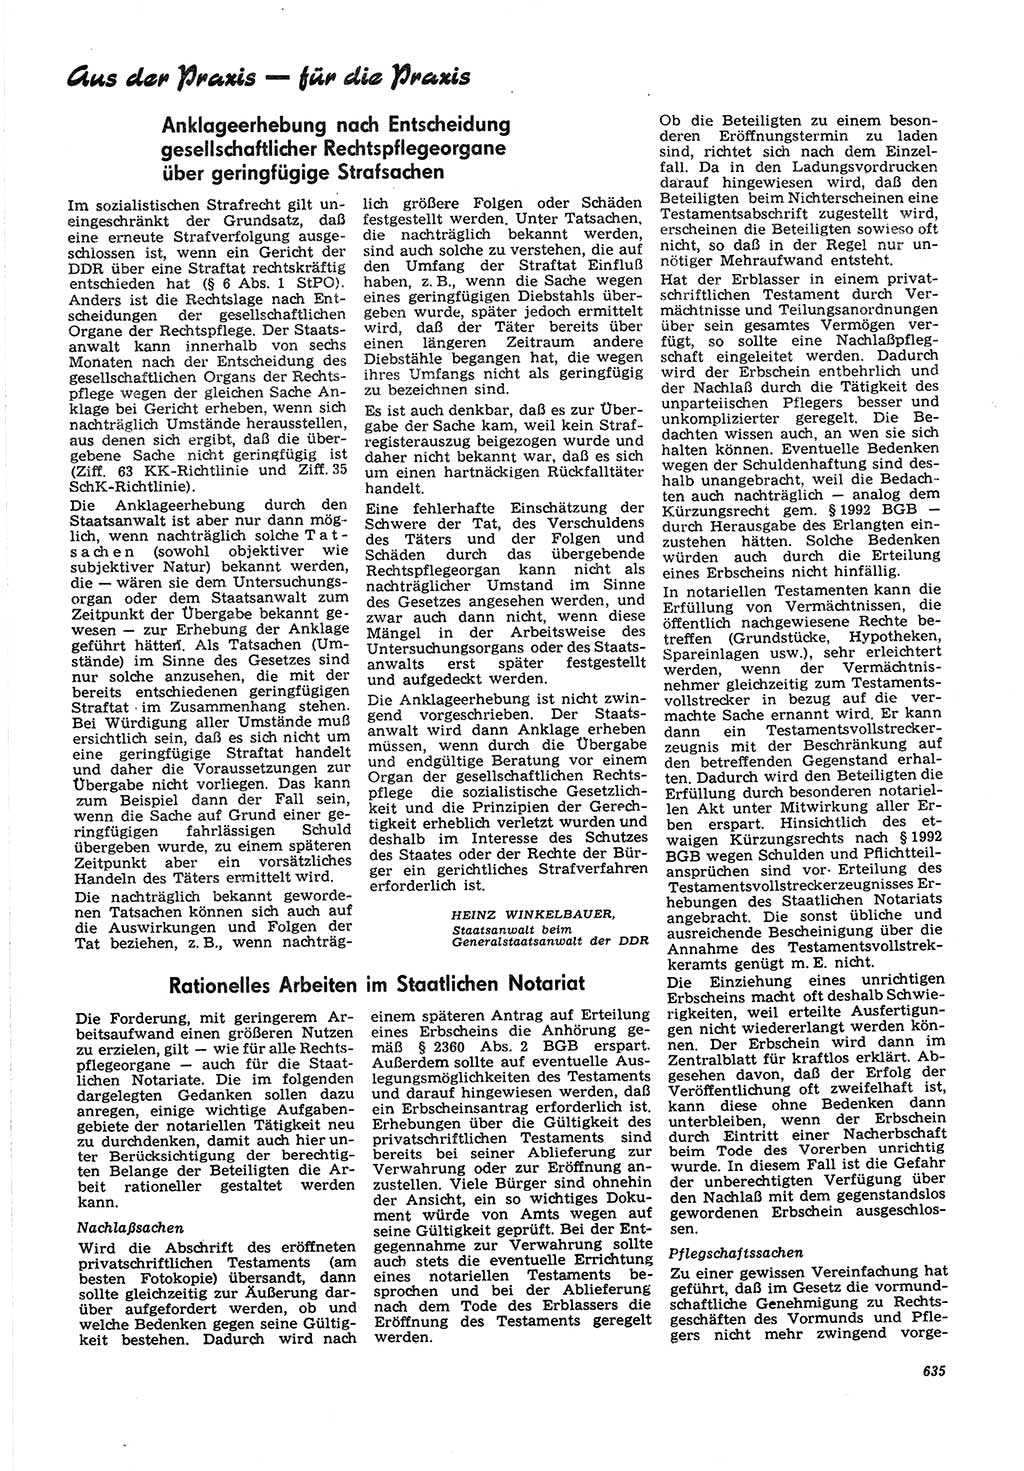 Neue Justiz (NJ), Zeitschrift für Recht und Rechtswissenschaft [Deutsche Demokratische Republik (DDR)], 21. Jahrgang 1967, Seite 635 (NJ DDR 1967, S. 635)